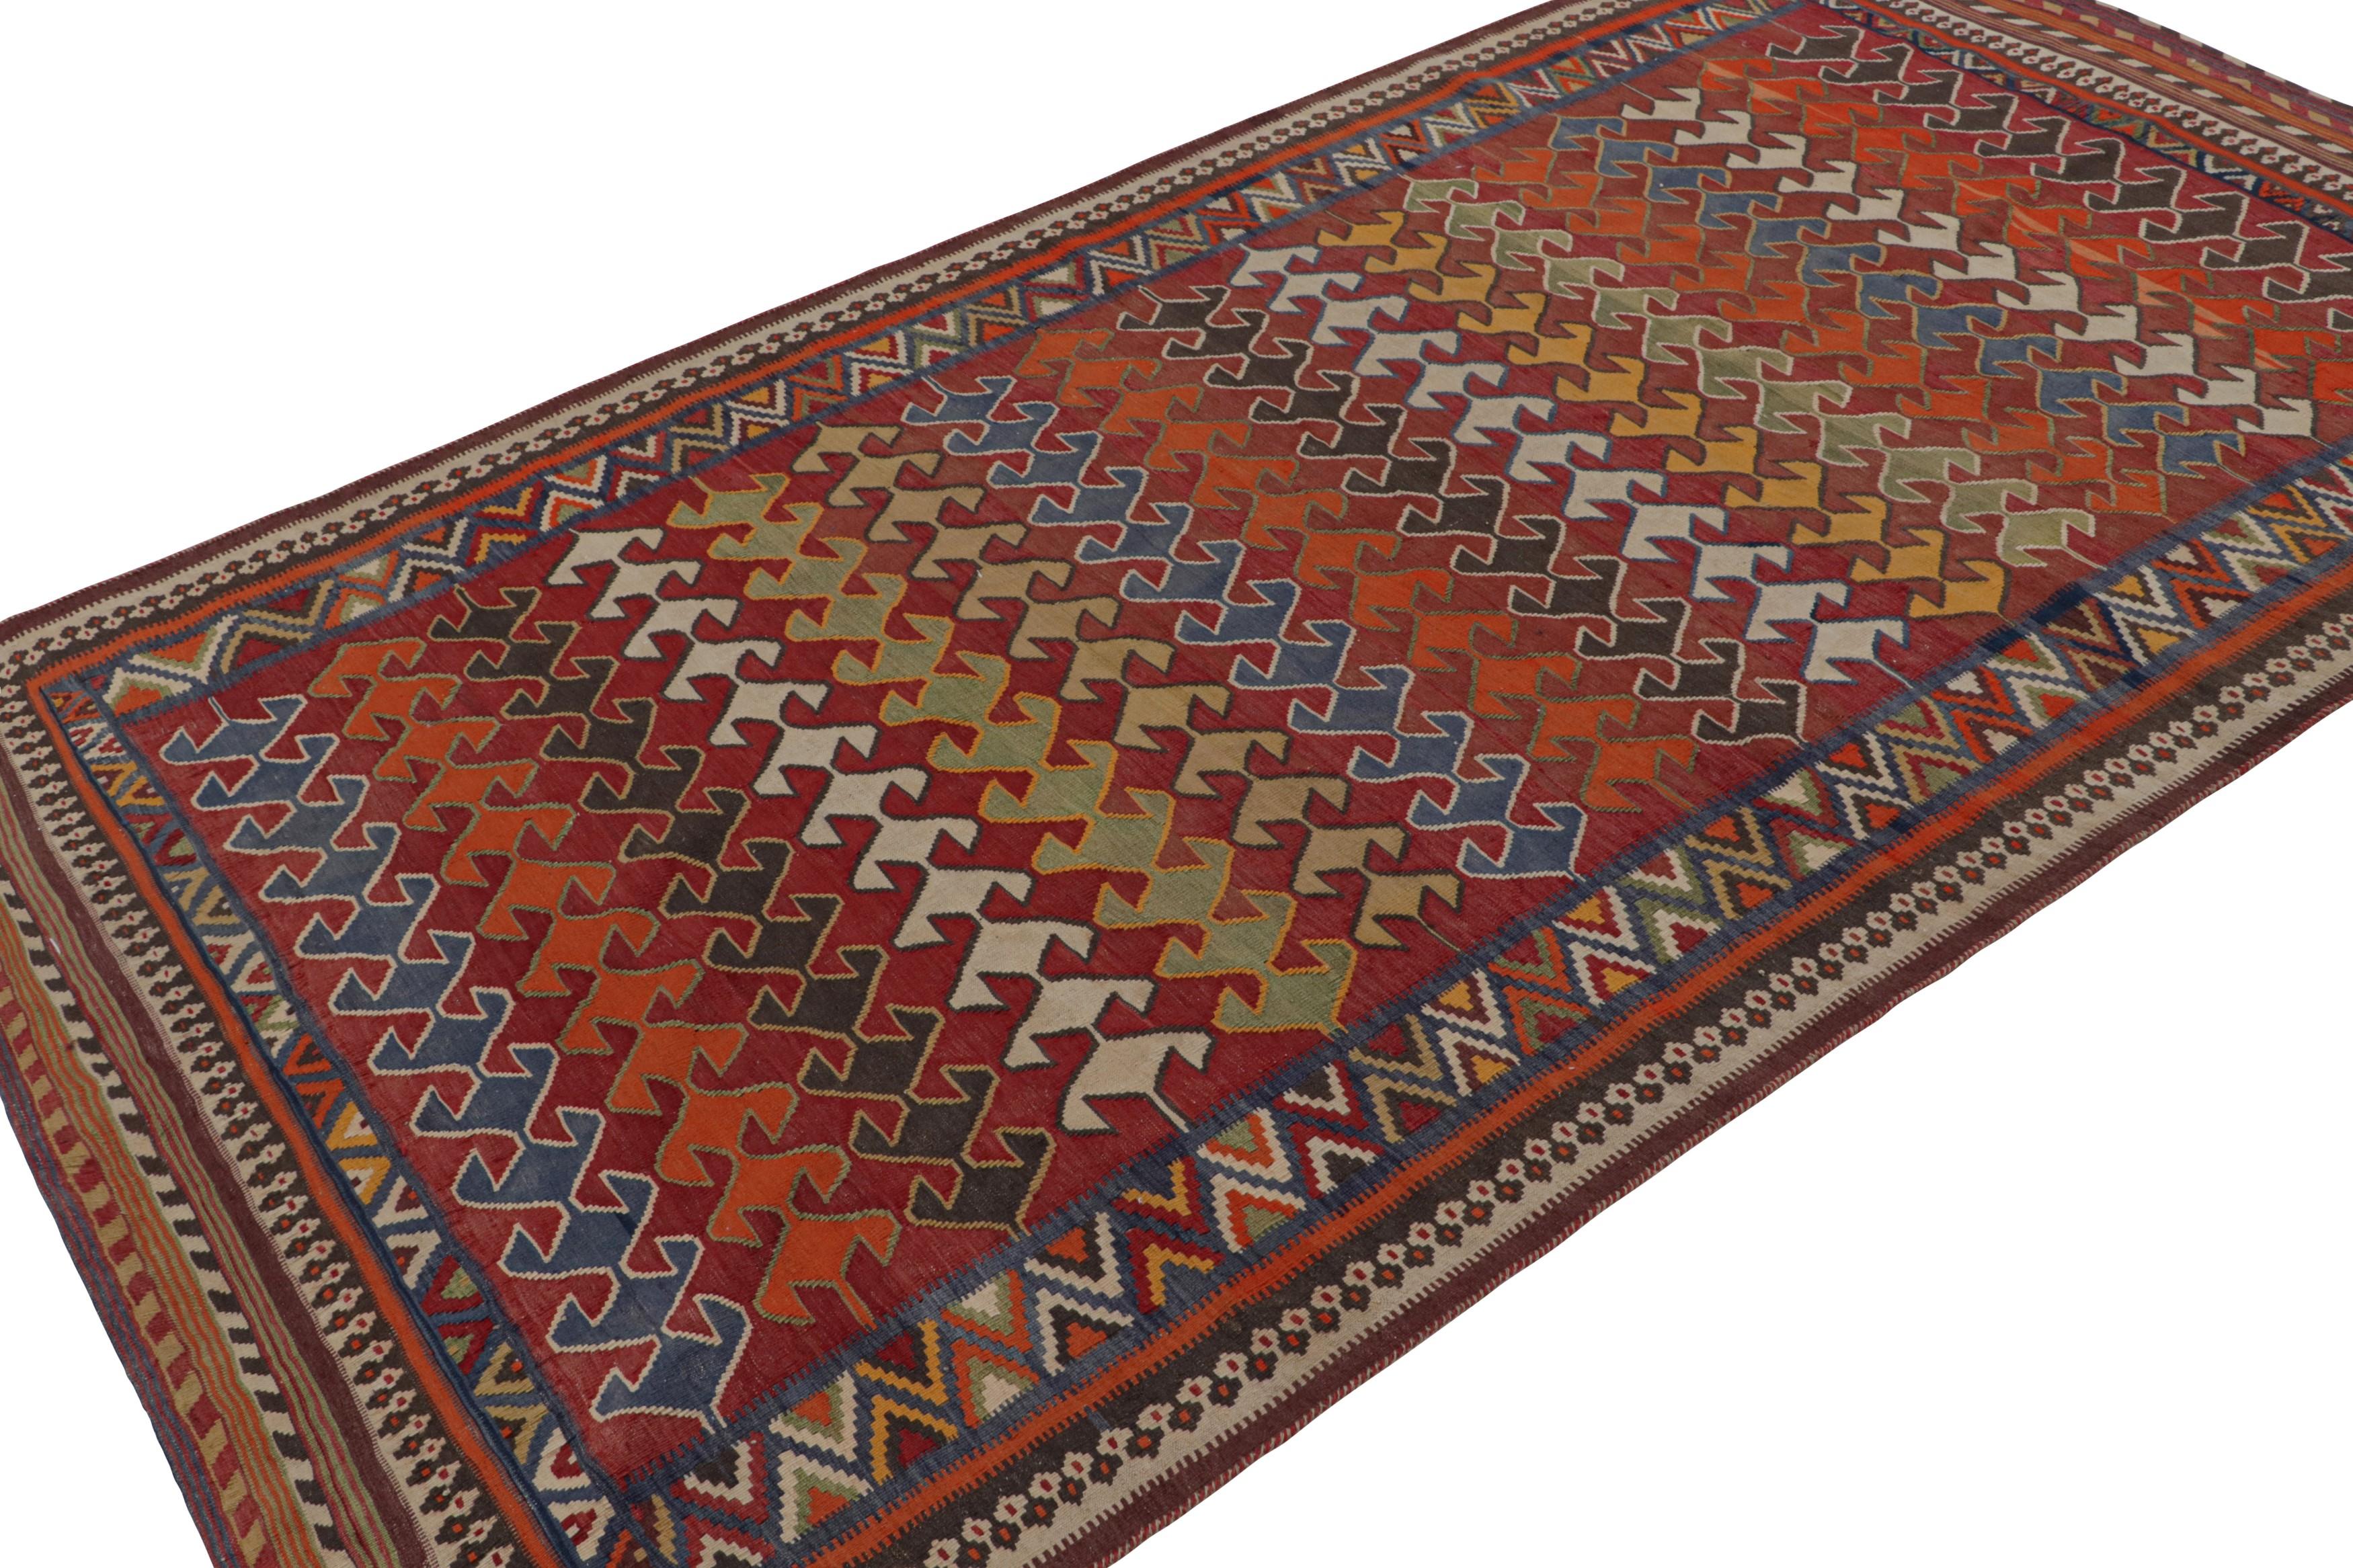 Tissé à la main en laine, vers 1950-1960, ce tapis Kilim tribal afghan de 5x9, aux couleurs vibrantes et aux motifs géométriques sur fond rouge, est un ajout intéressant à la Collection Rug & Kilim.   

Sur le Design : 

Ce tapis kilim spécial de la